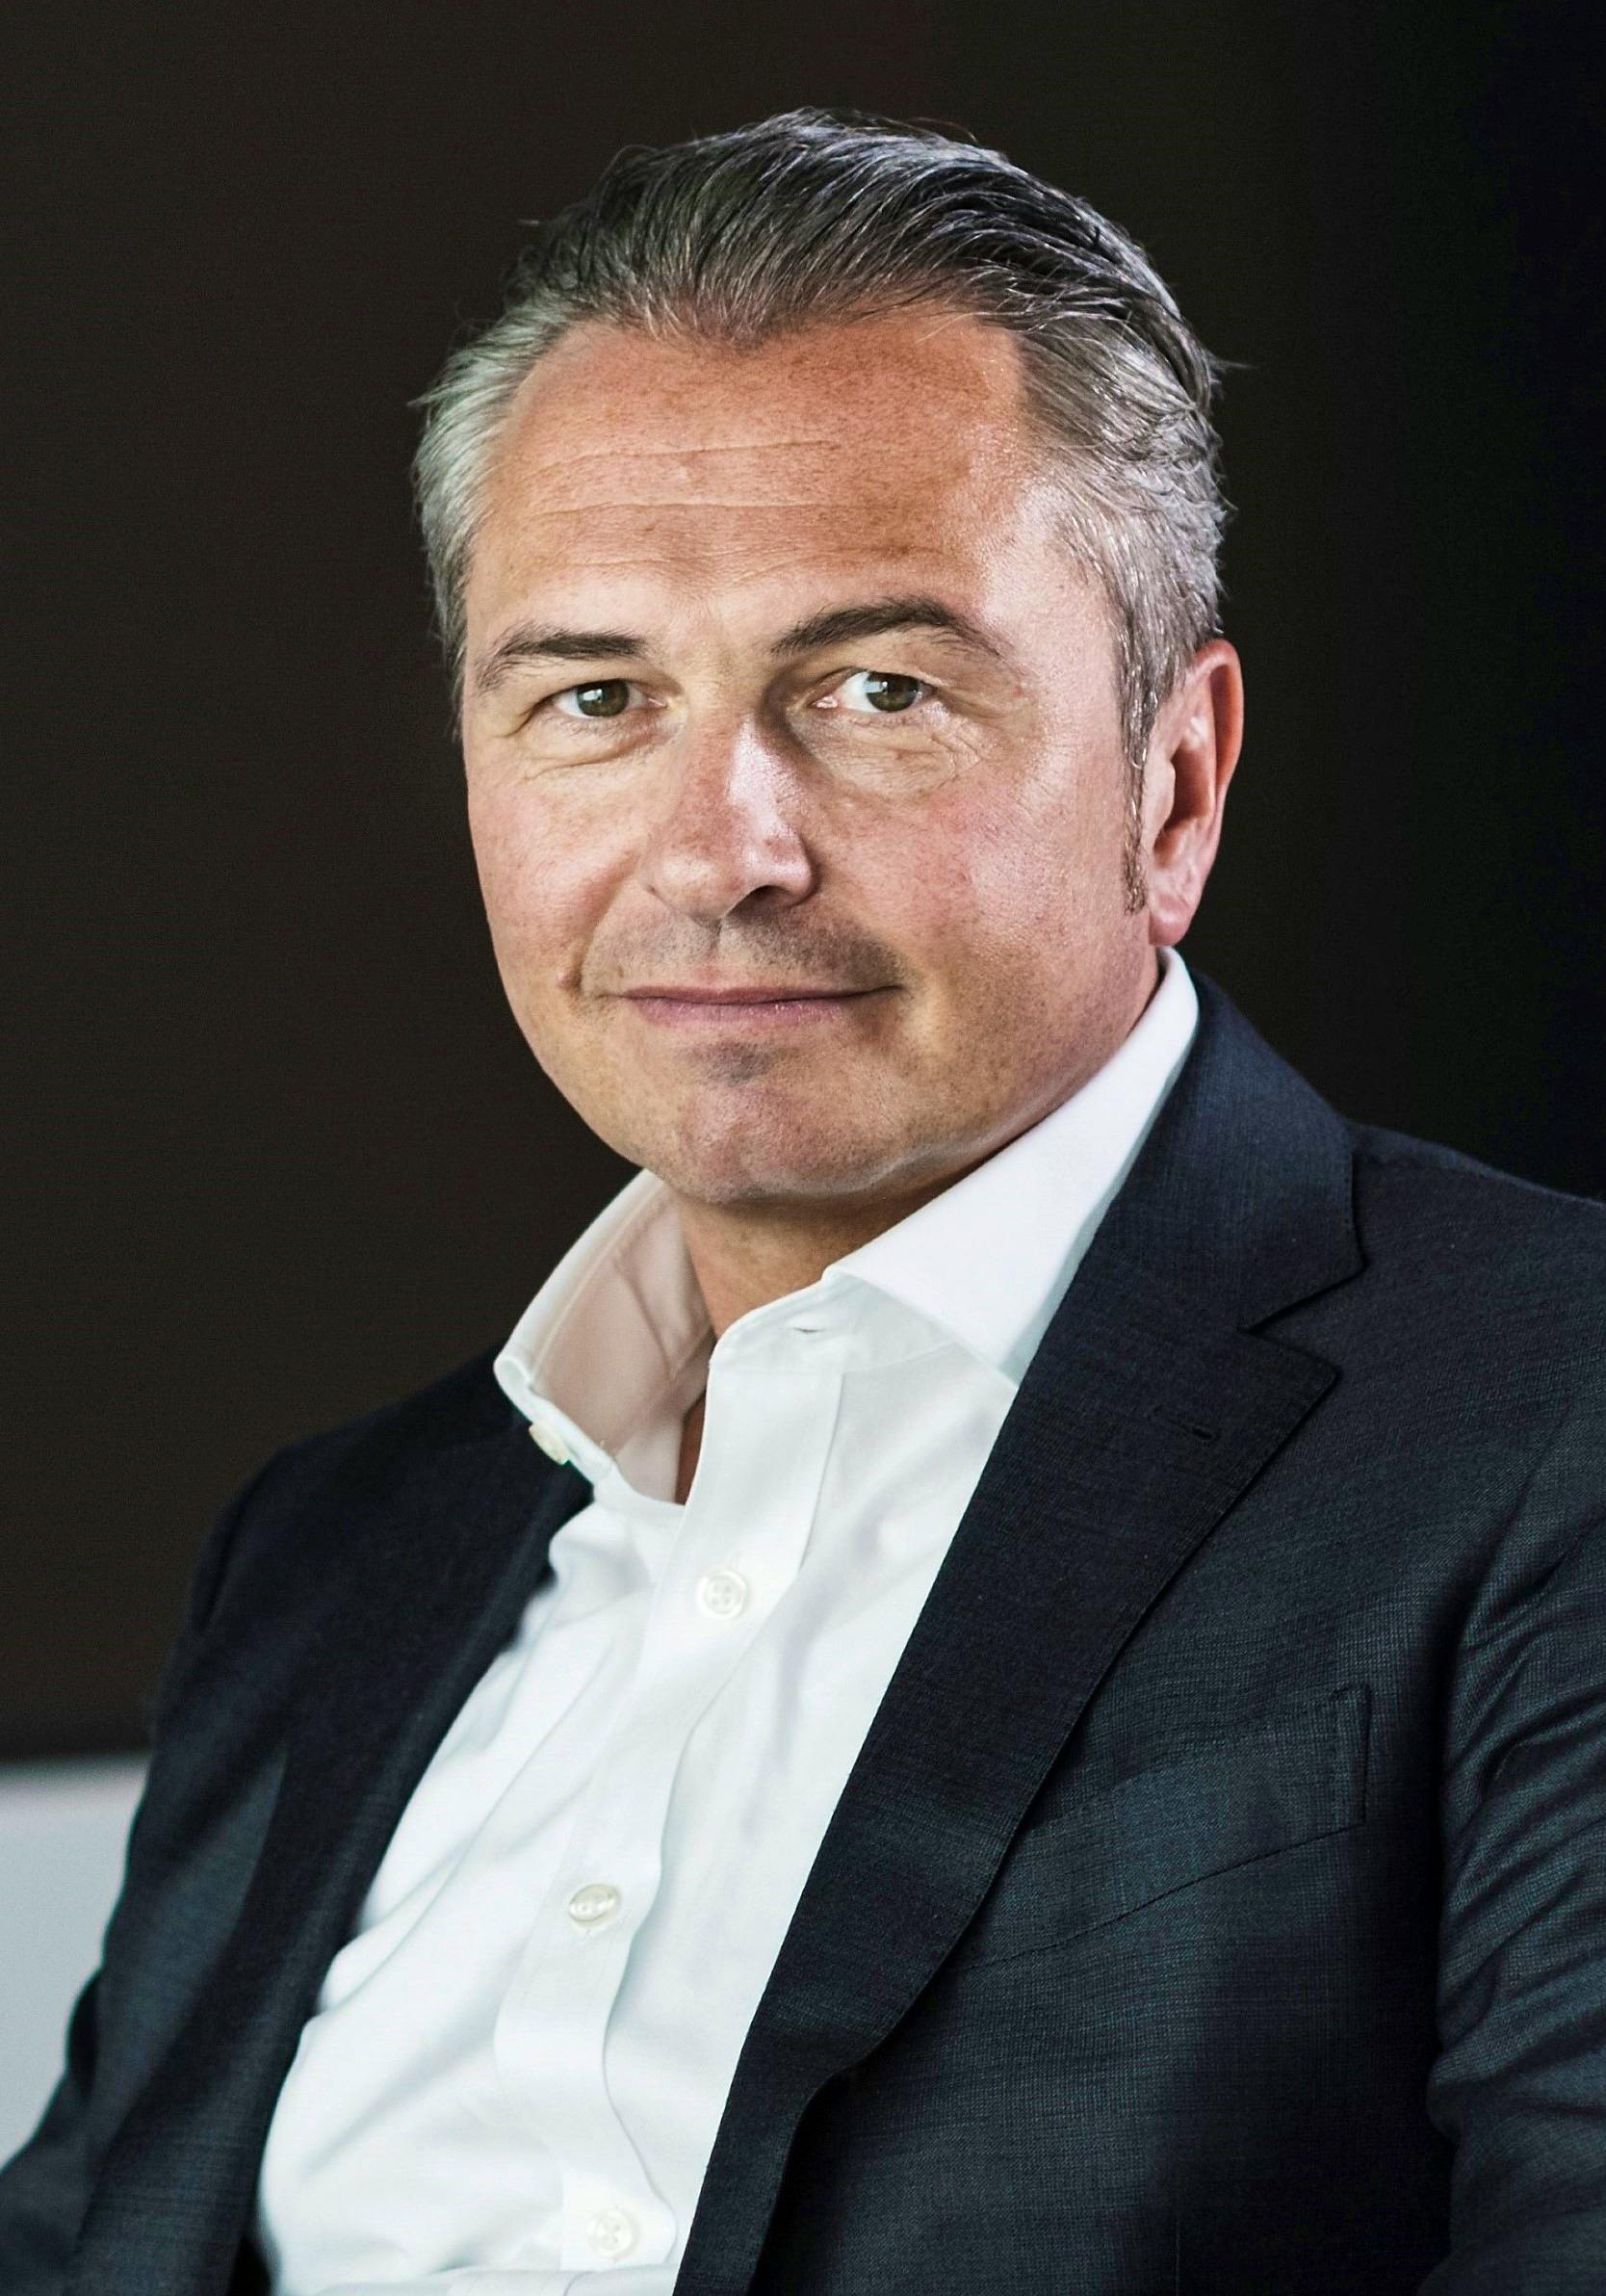 André Krause ist CEO von Sunrise UPC